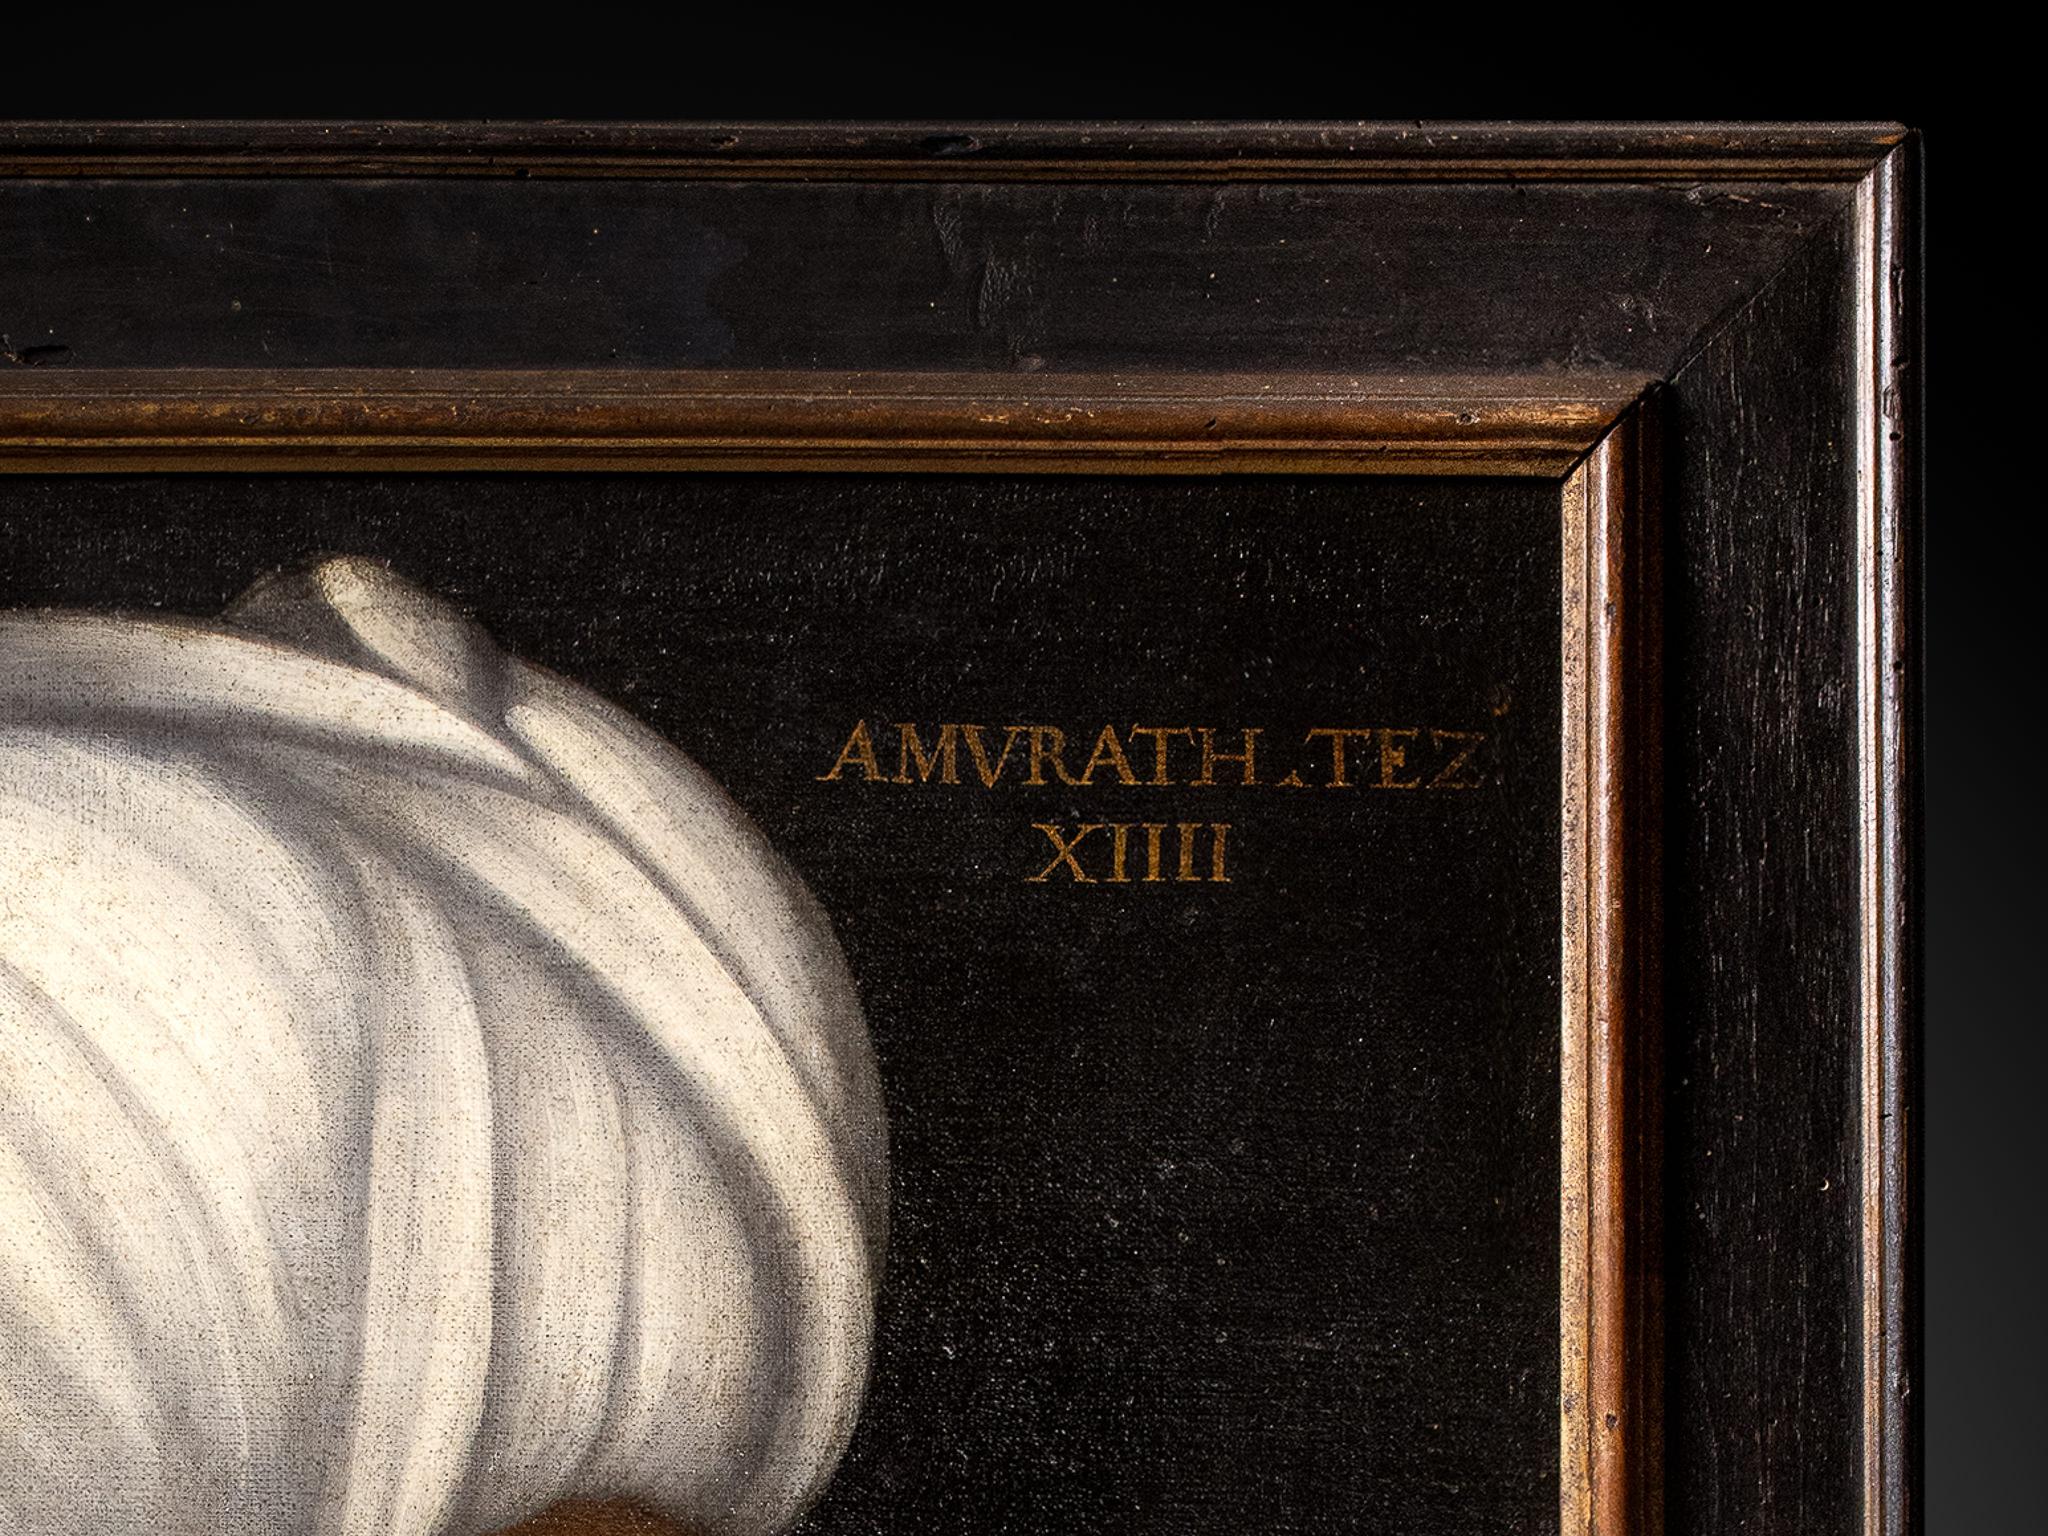 Porträt von Sultan Isa Çelebi (gestorben 1403), Identität in lateinischer Sprache.
Porträt von Sultan Murad III. (1546-1595), Identität in lateinischer Sprache eingetragen.

Die vorliegenden Gemälde beziehen sich auf die einem Anhänger von Paolo